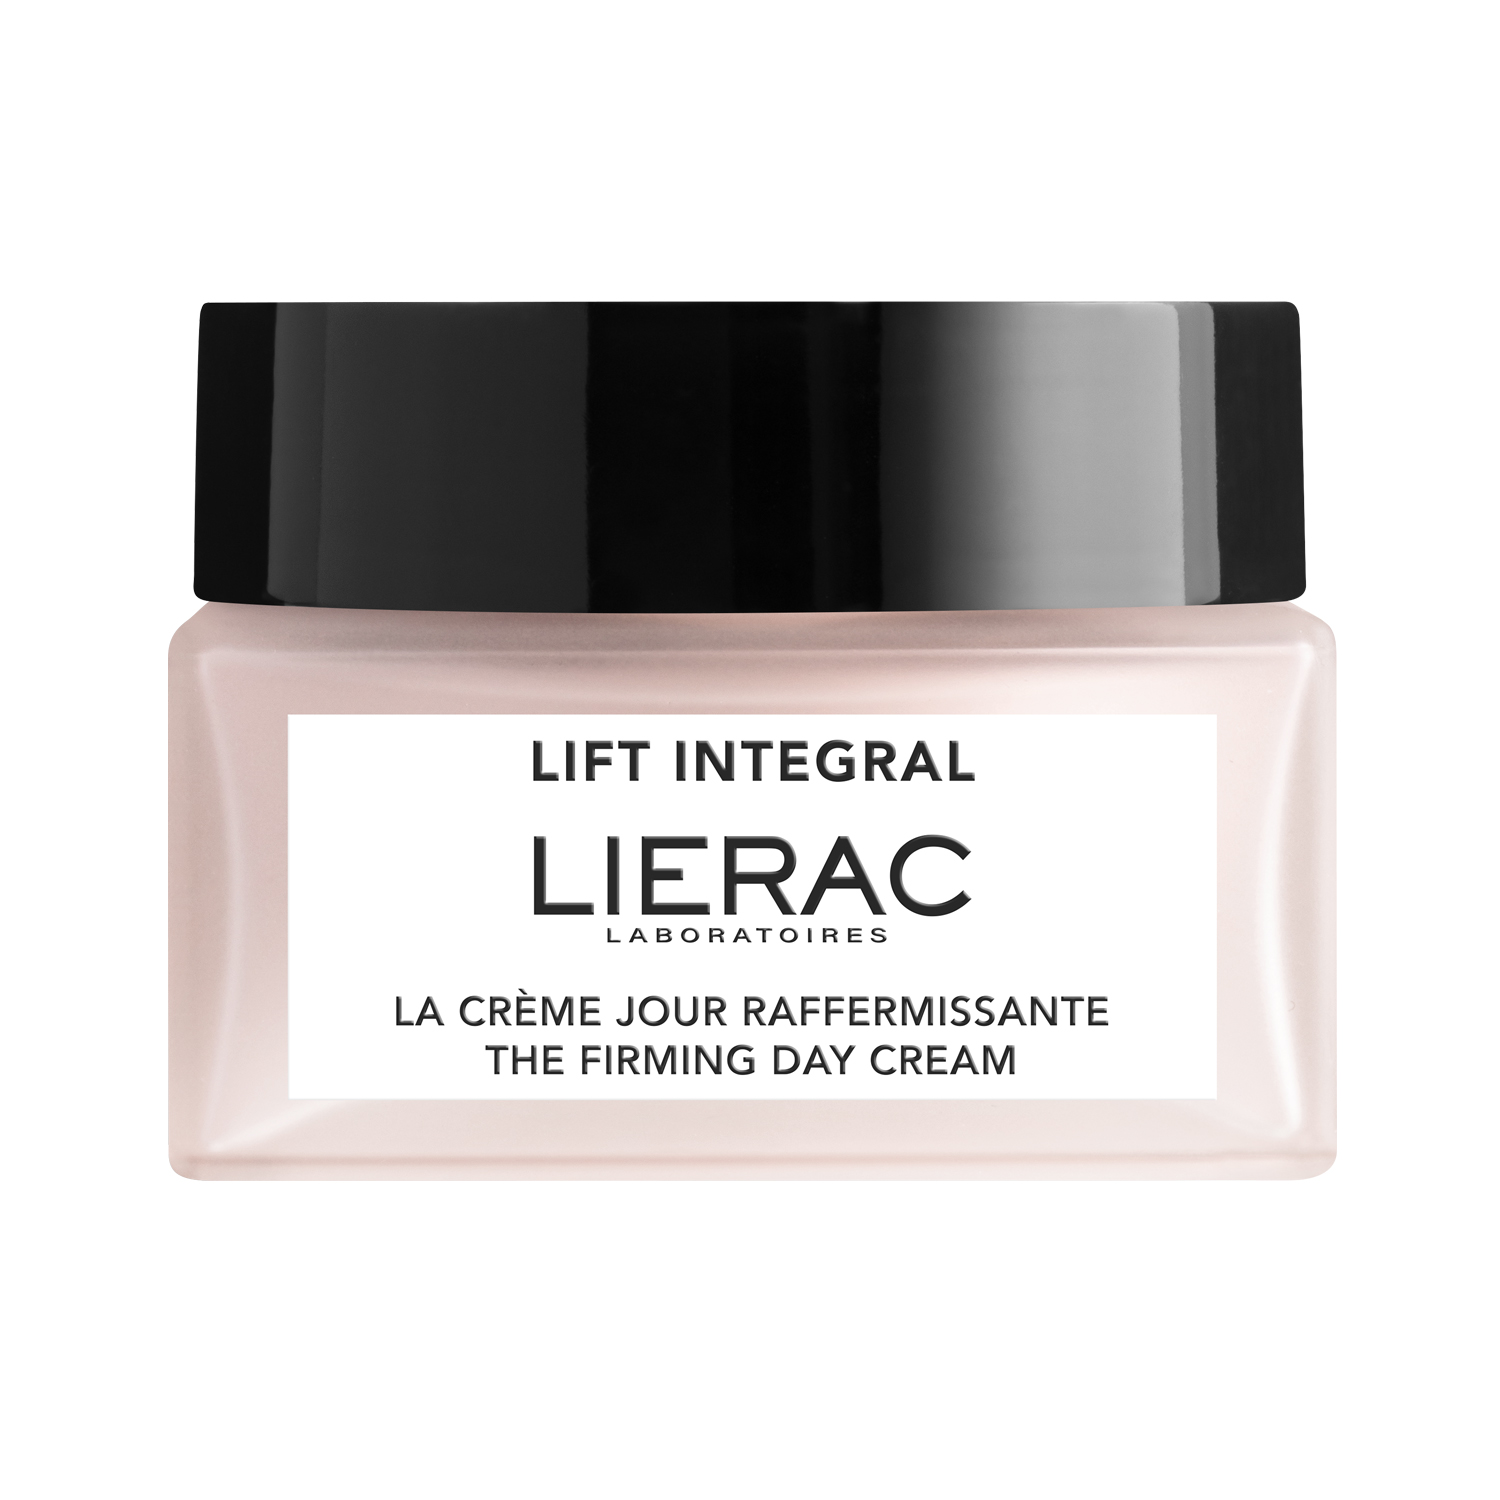 Lierac Lift Integral укрепляющий дневной крем-лифтинг для лица 50мл крем лифтинг для лица укрепляющий дневной lift integral lierac лиерак банка 50мл